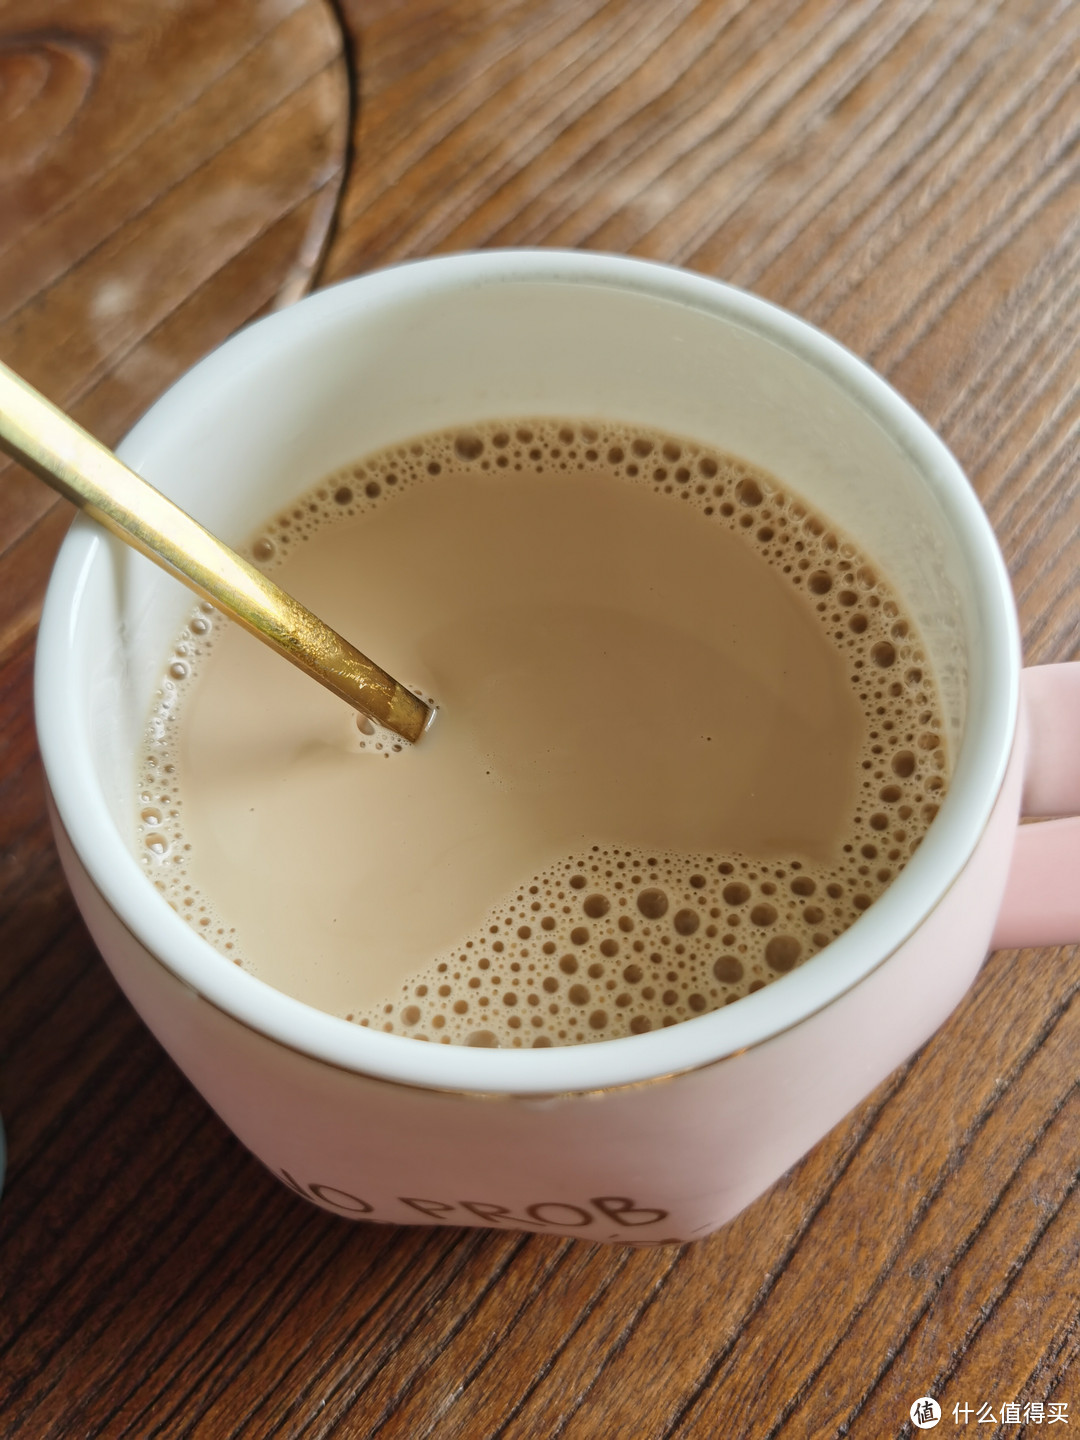 200毫升的纯牛奶与连咖啡的碰撞